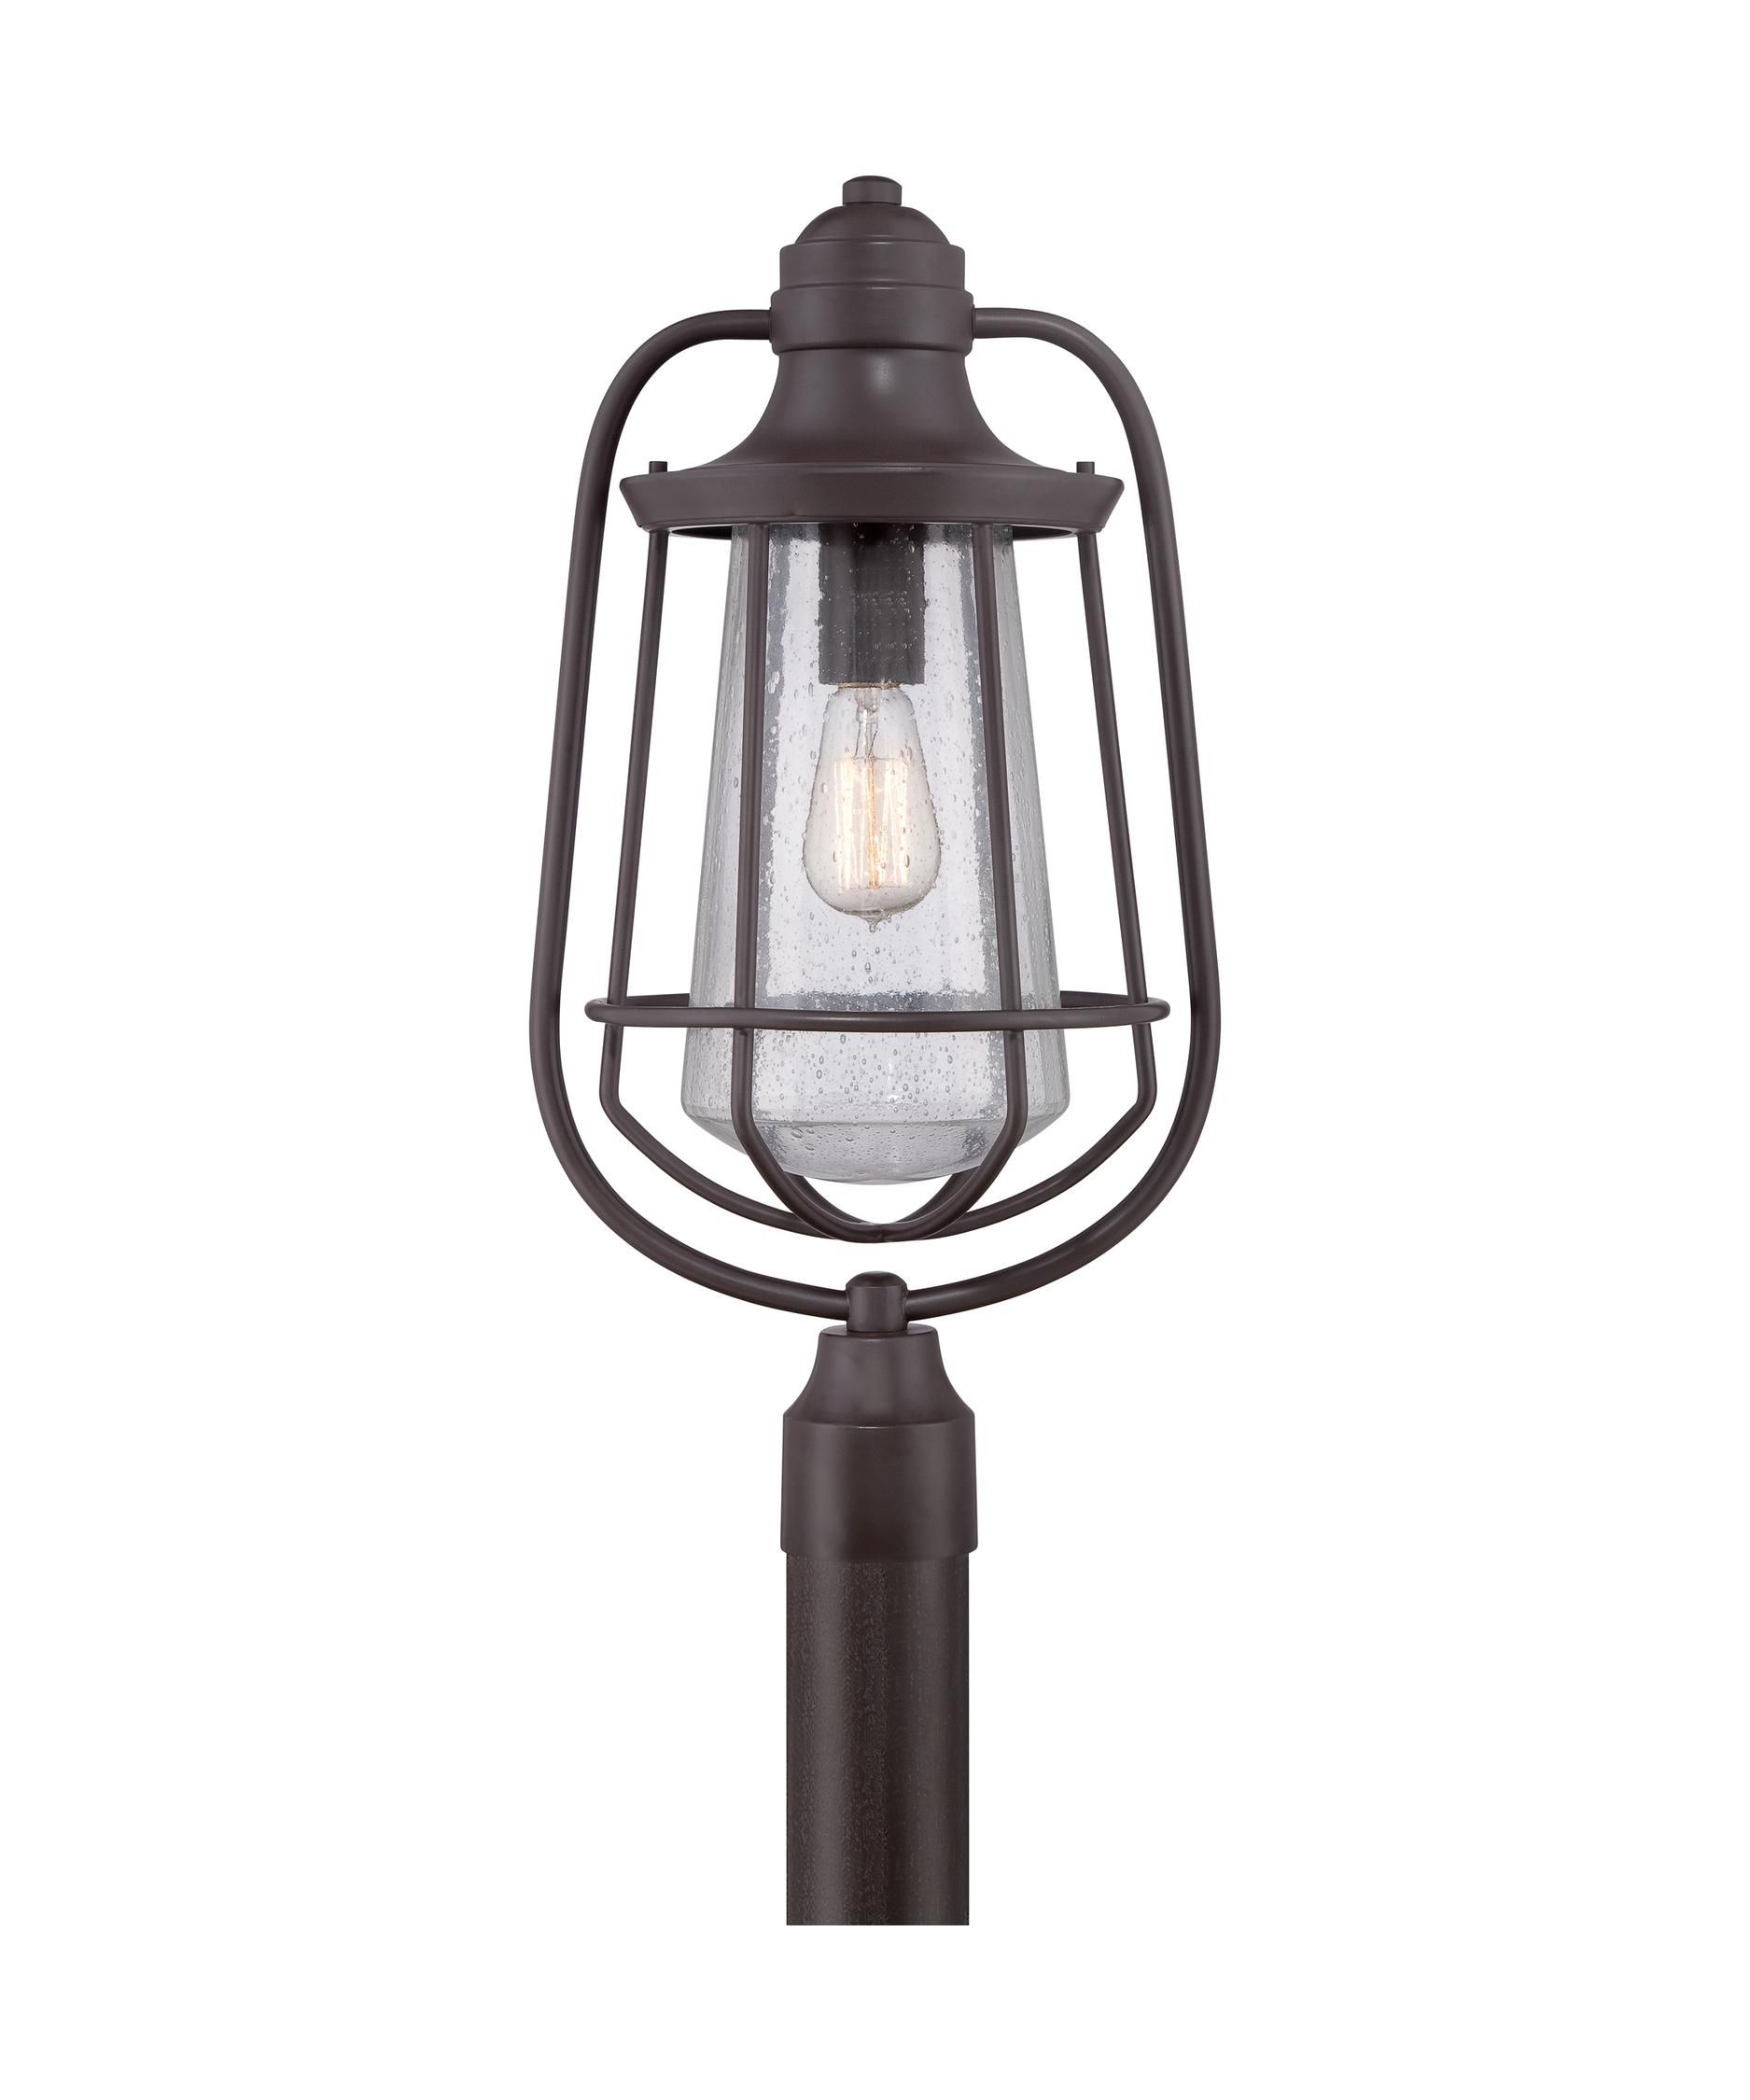 Outdoor Light : Outdoor Lamp Posts Costco , Outdoor Light Post Regarding Outdoor Lanterns For Posts (View 9 of 20)